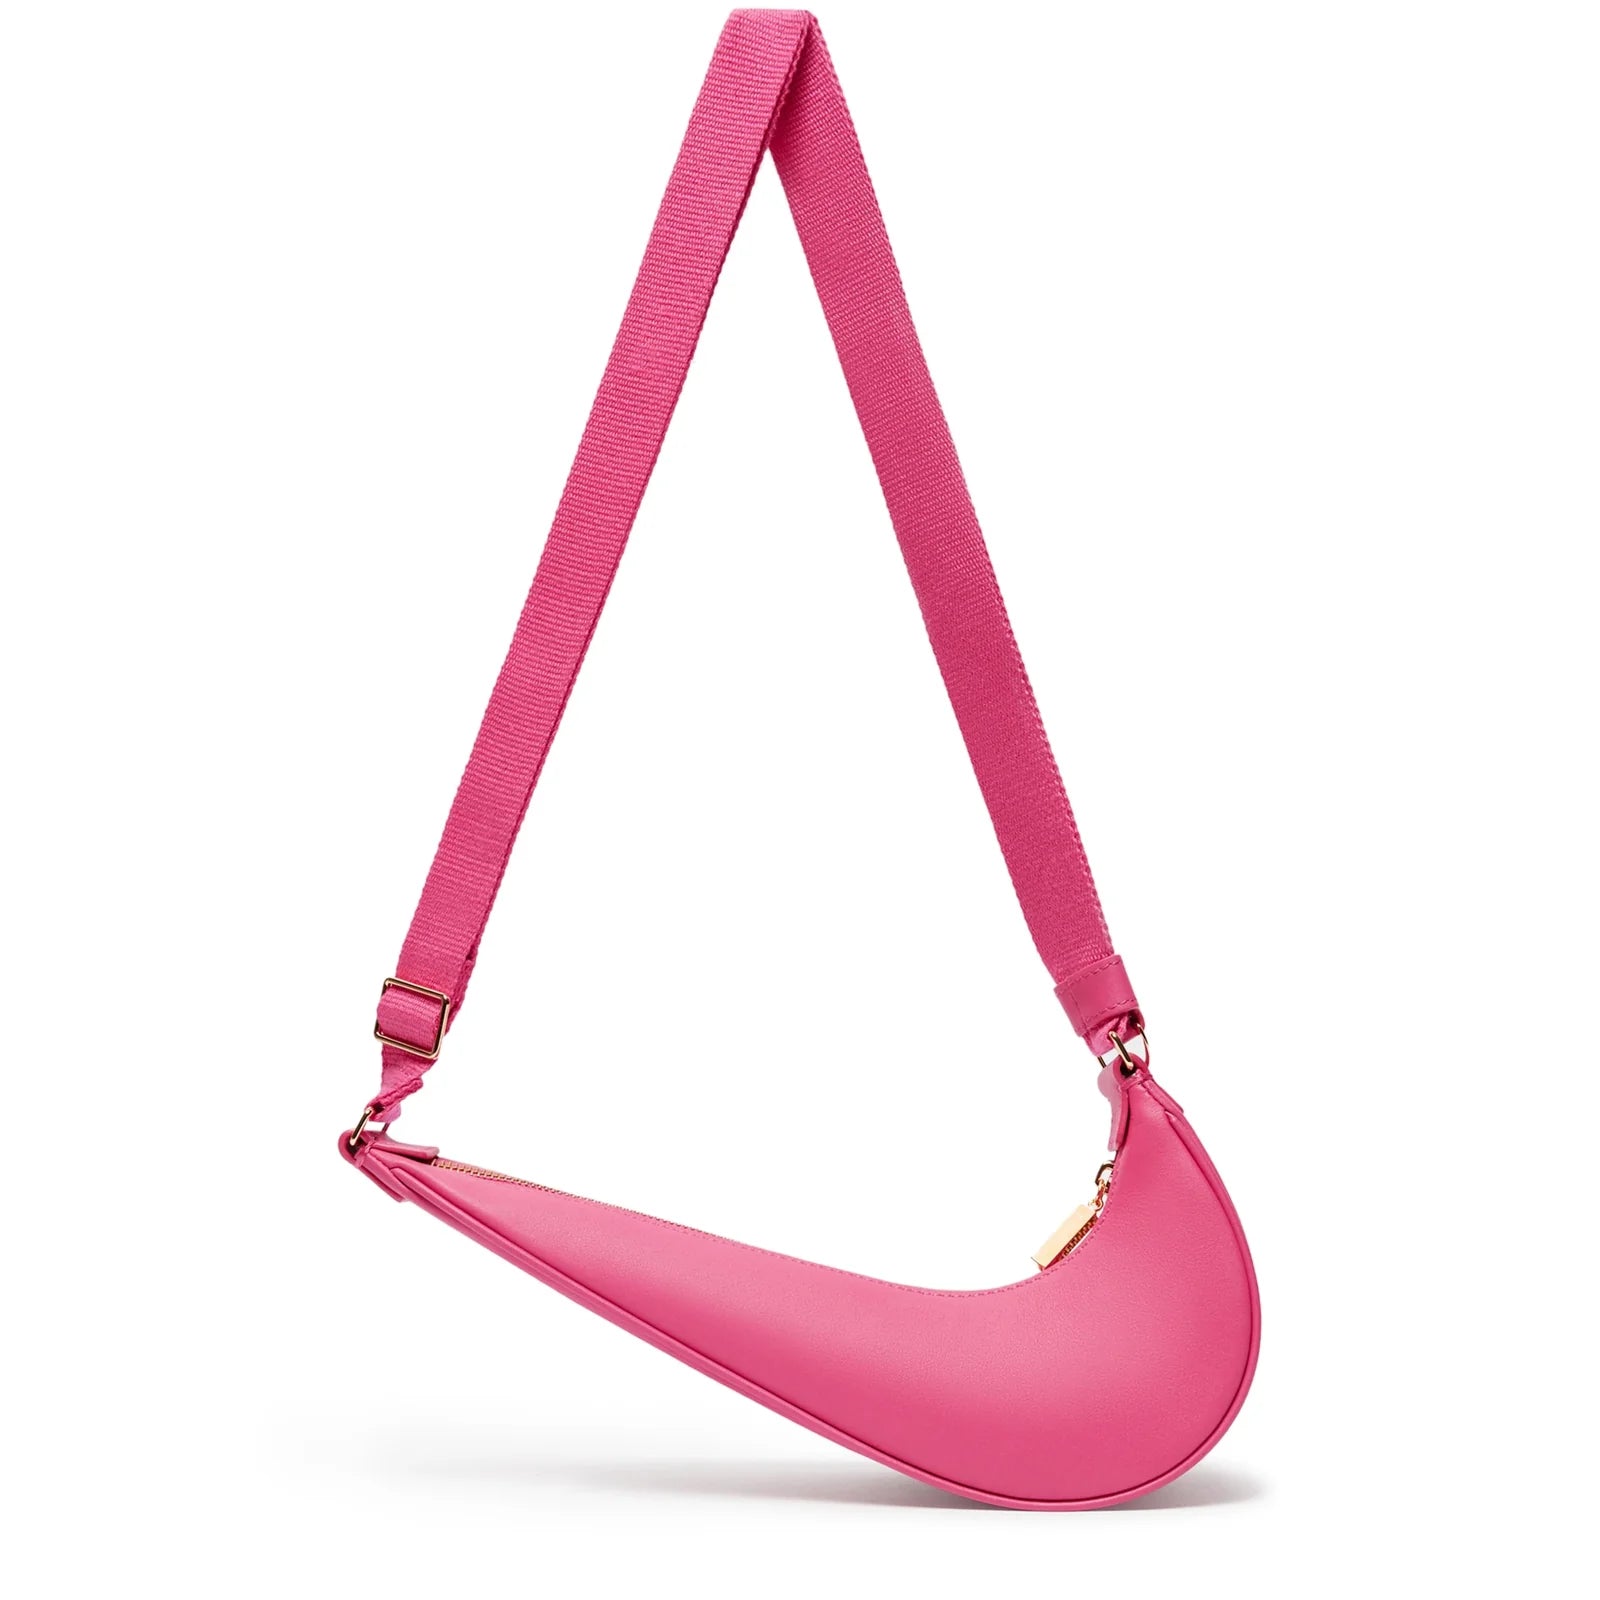 Nike x Jacquemus Le Sac Swoosh Bag 'Dark Pink'